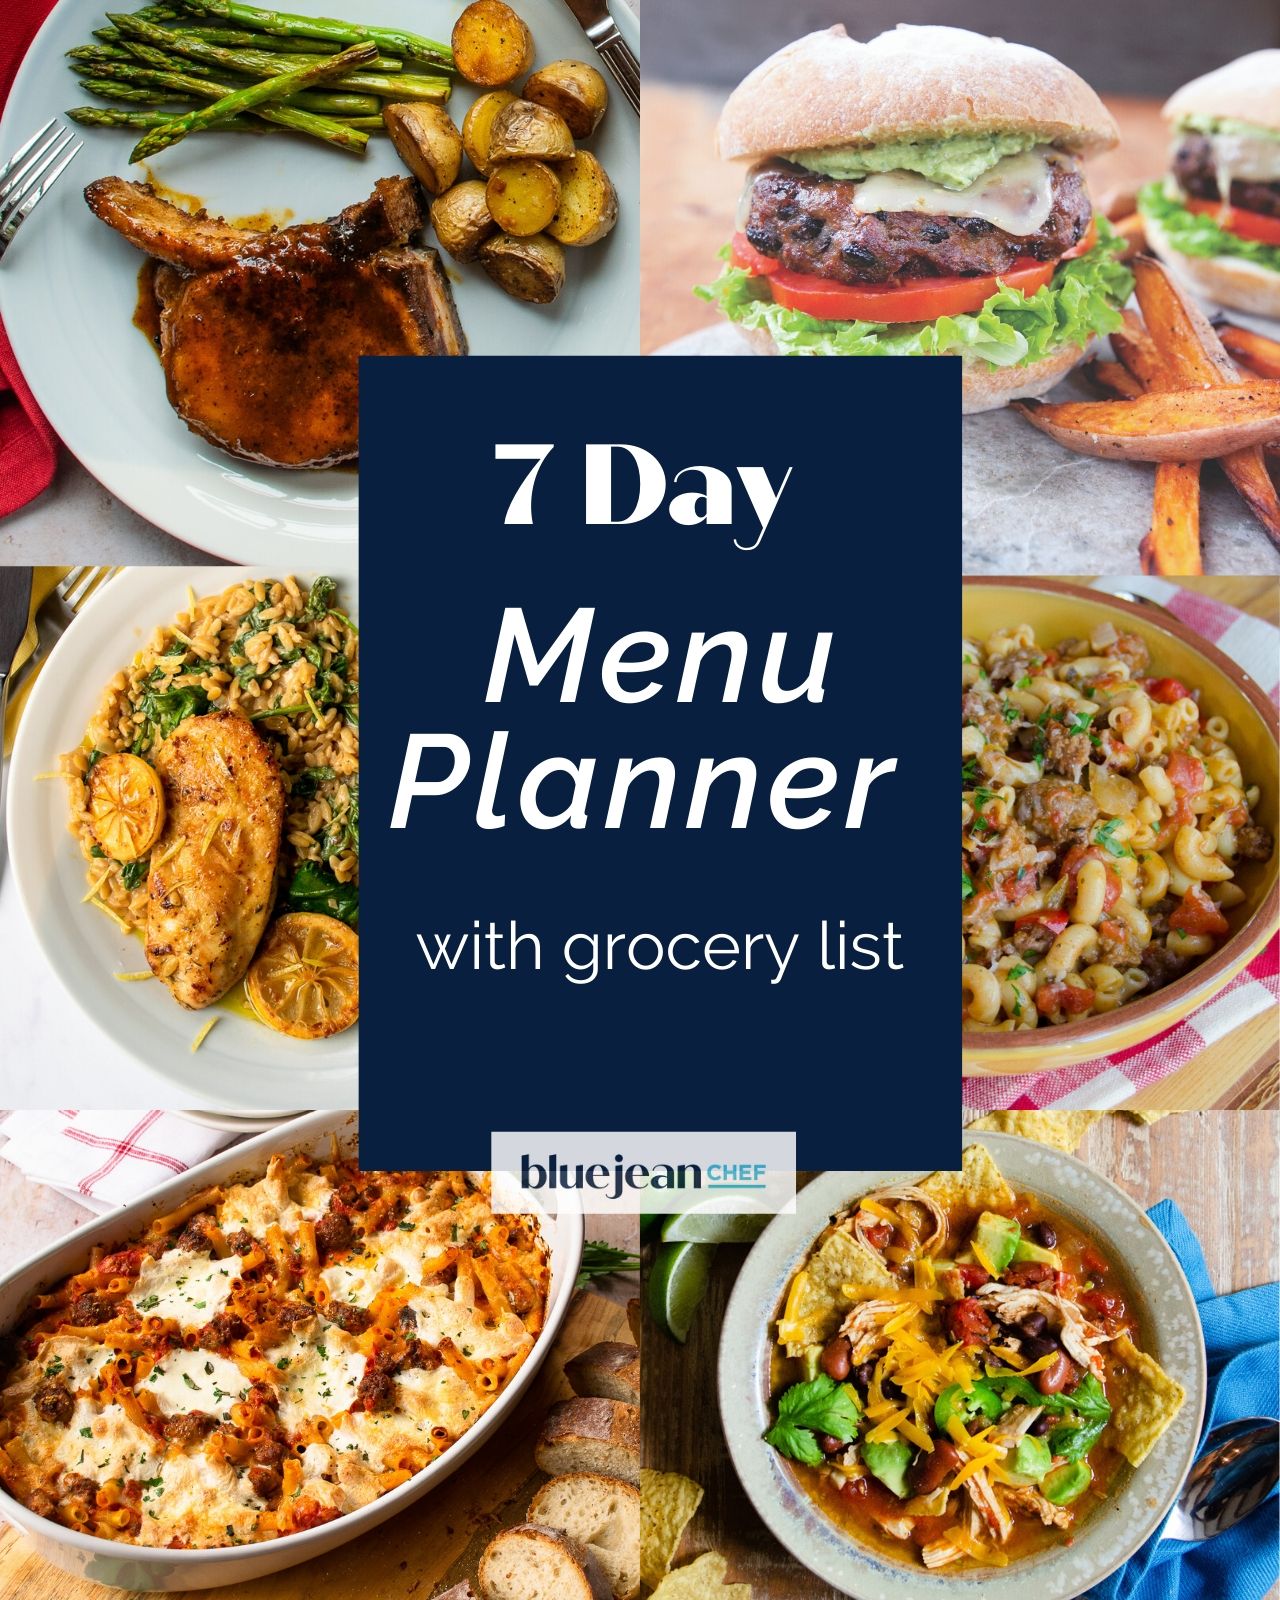 7-day-menu-planner-week-1-blue-jean-chef-meredith-laurence